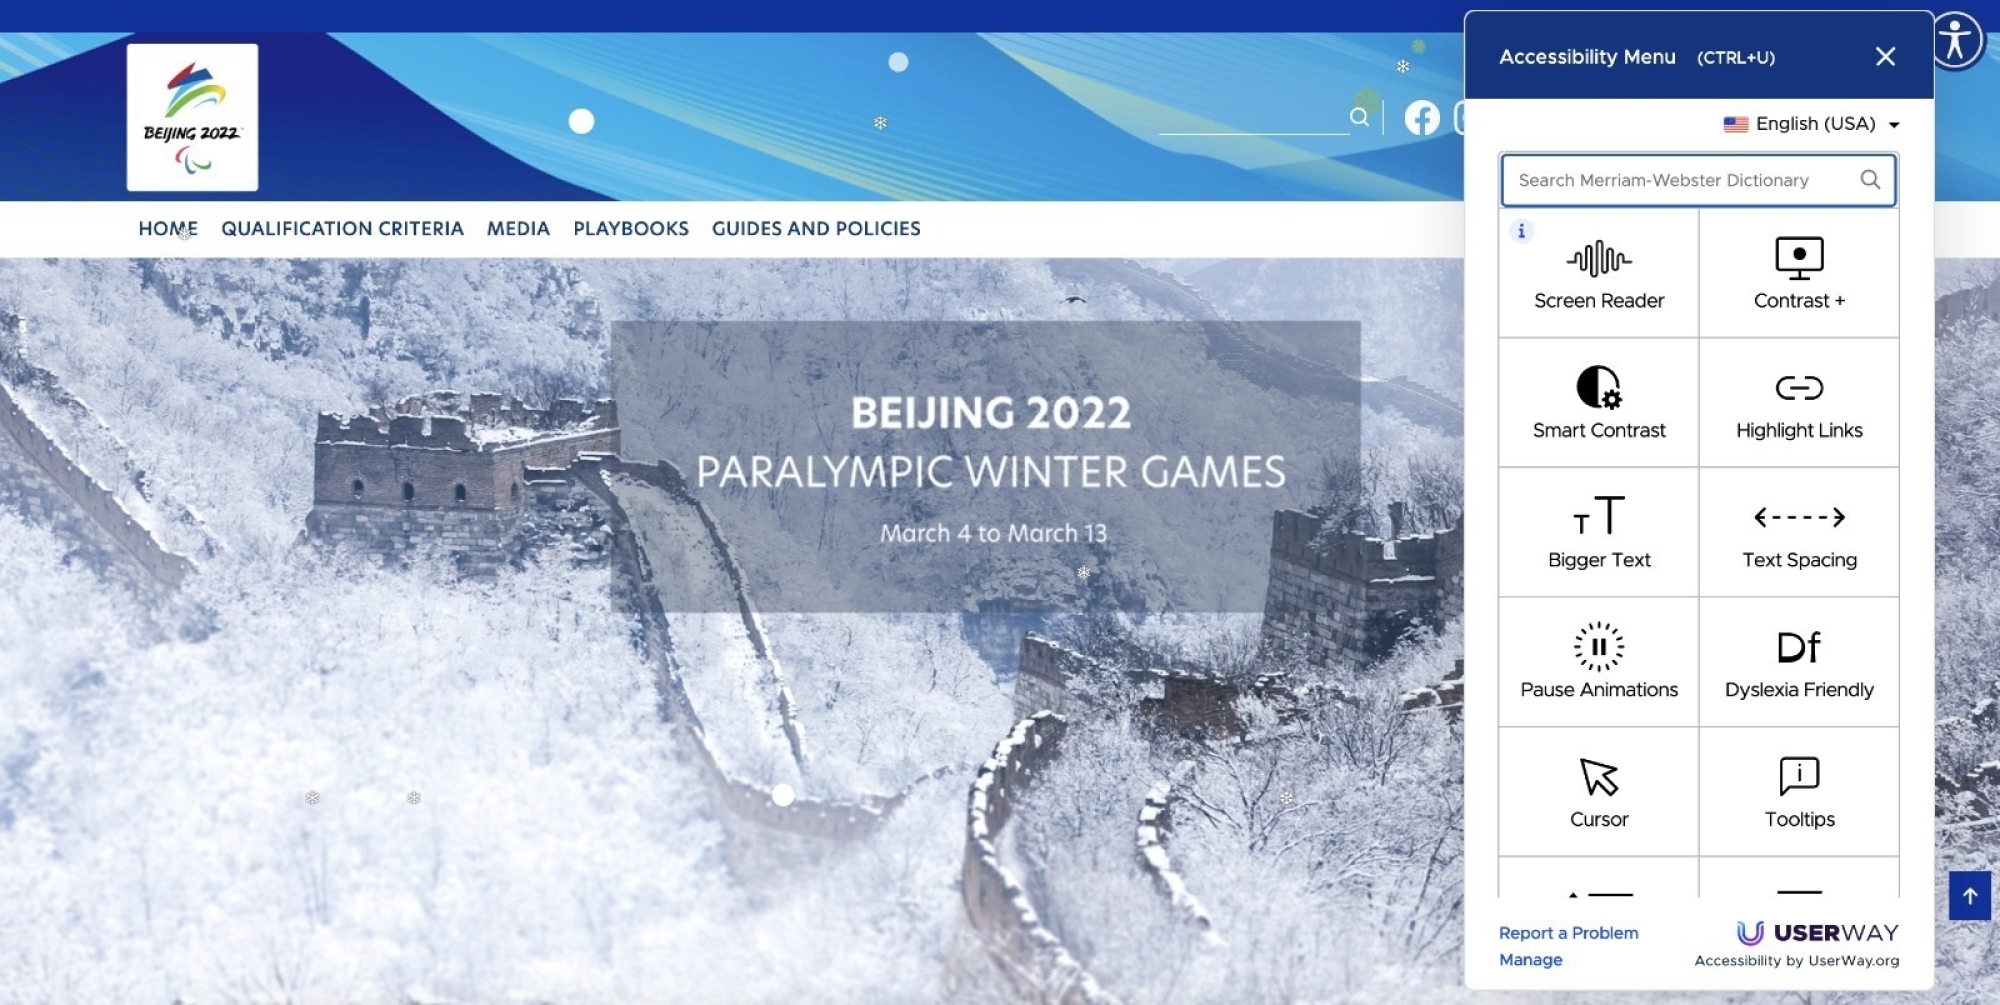 La page d'accueil des Jeux paralympiques d'hiver avec les options d'accessibilité affichées sur le côté droit de l'écran.